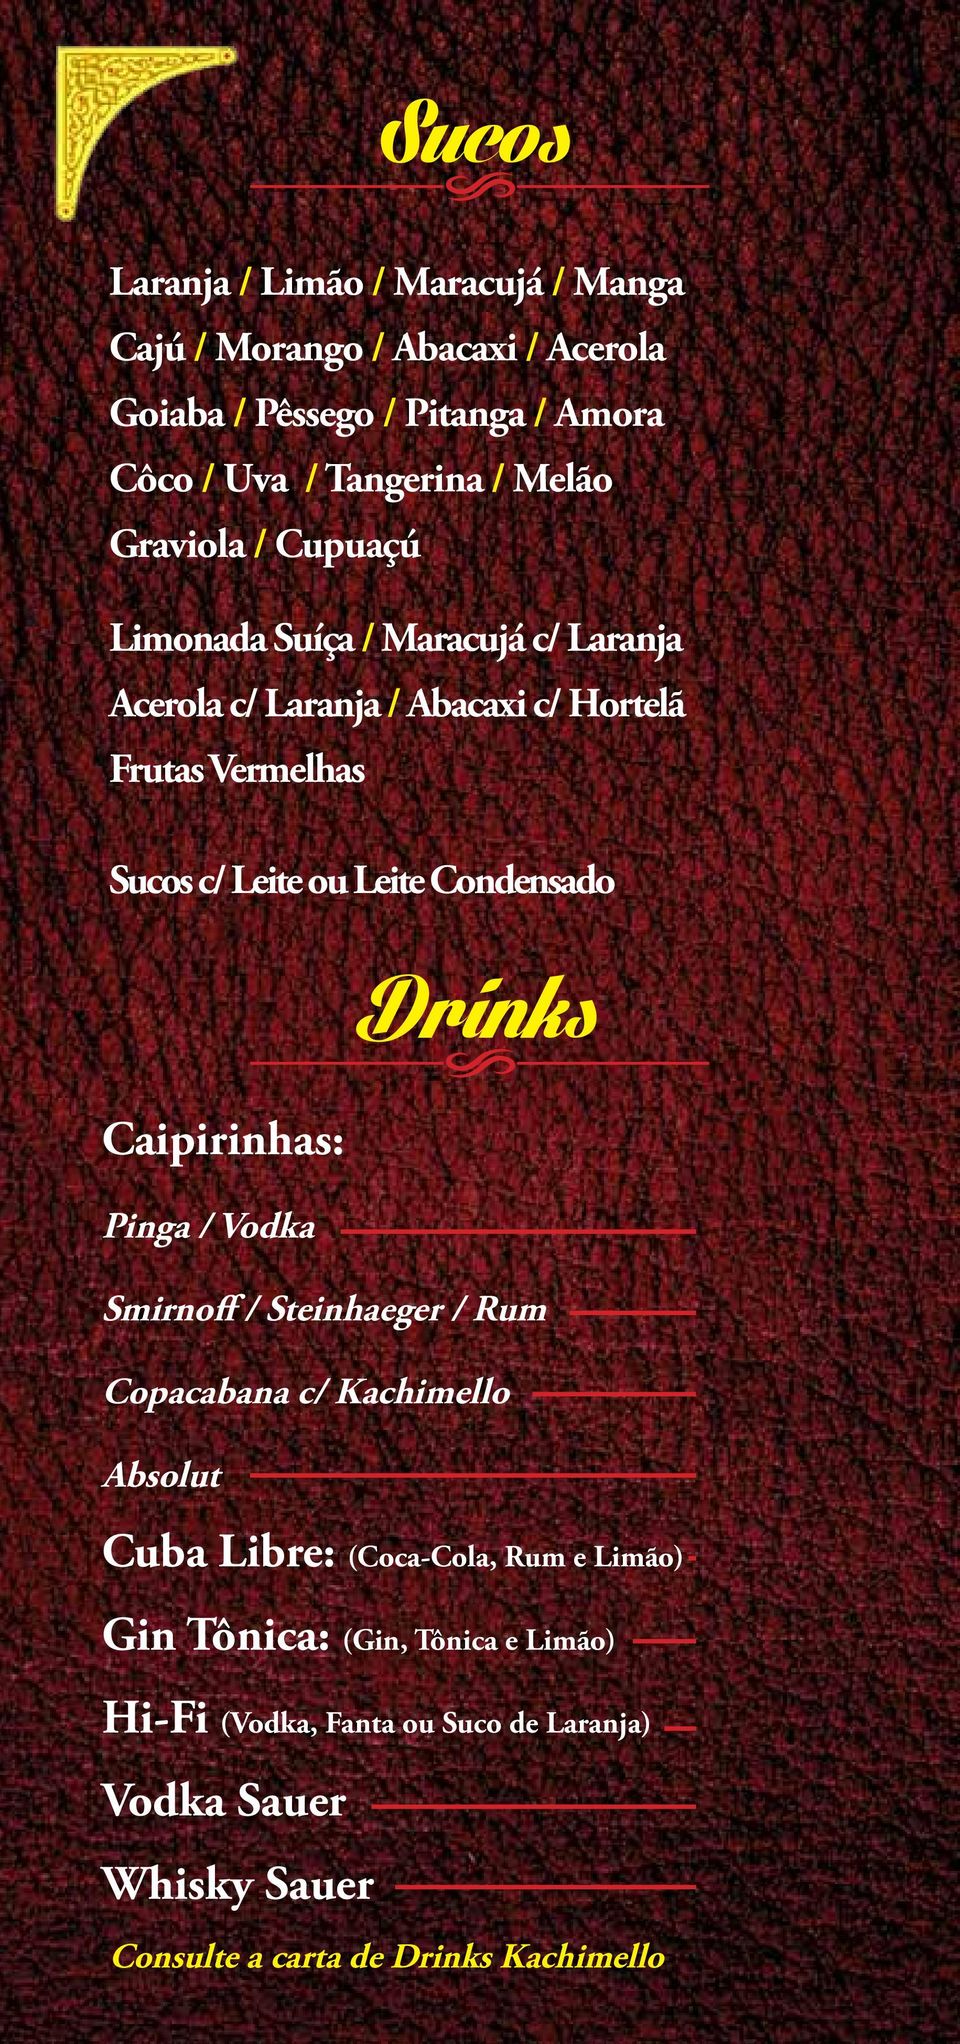 Leite Condensado Caipirinhas: odrinks Pinga / Vodka Smirnoff / Steinhaeger / Rum Copacabana c/ Kachimello Absolut Cuba Libre: (Coca-Cola,